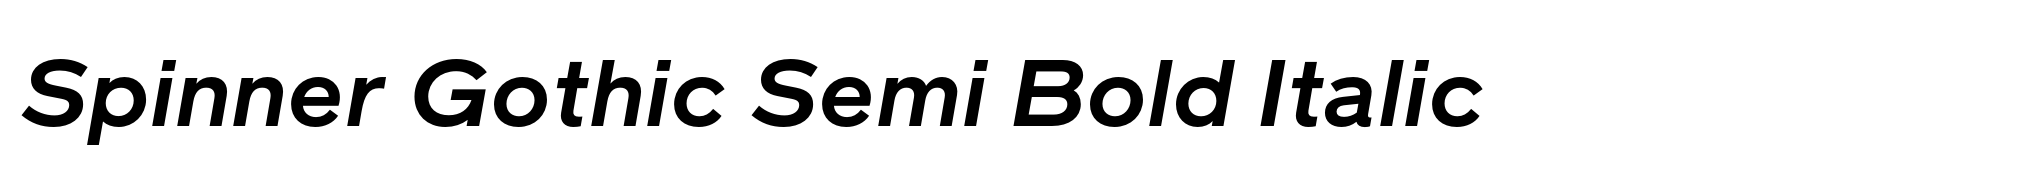 Spinner Gothic Semi Bold Italic image